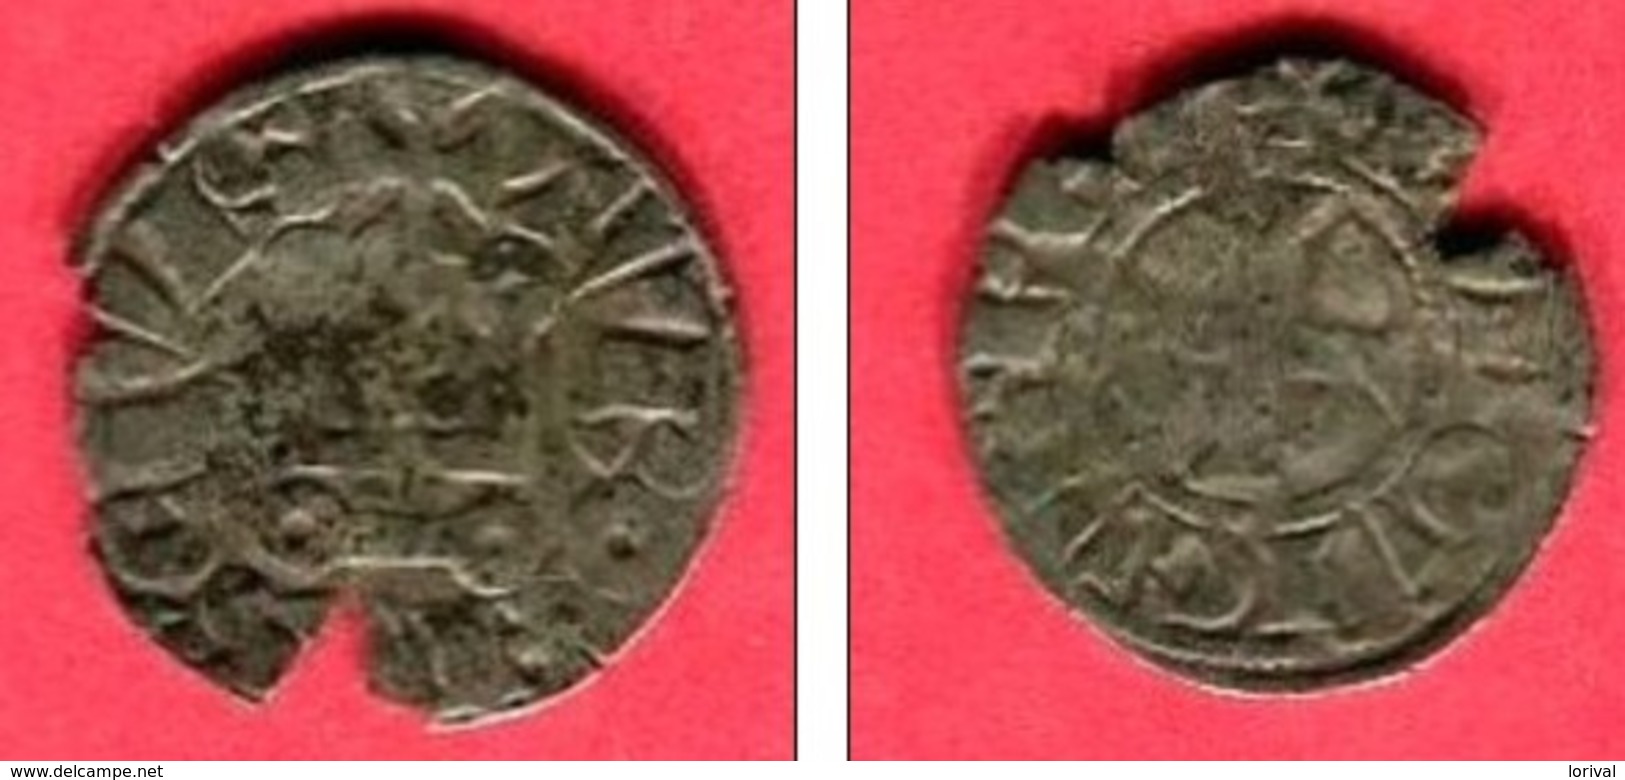 DENIER  (CI 184) TB  19 - 1226-1270 Luigi IX (San Luigi)